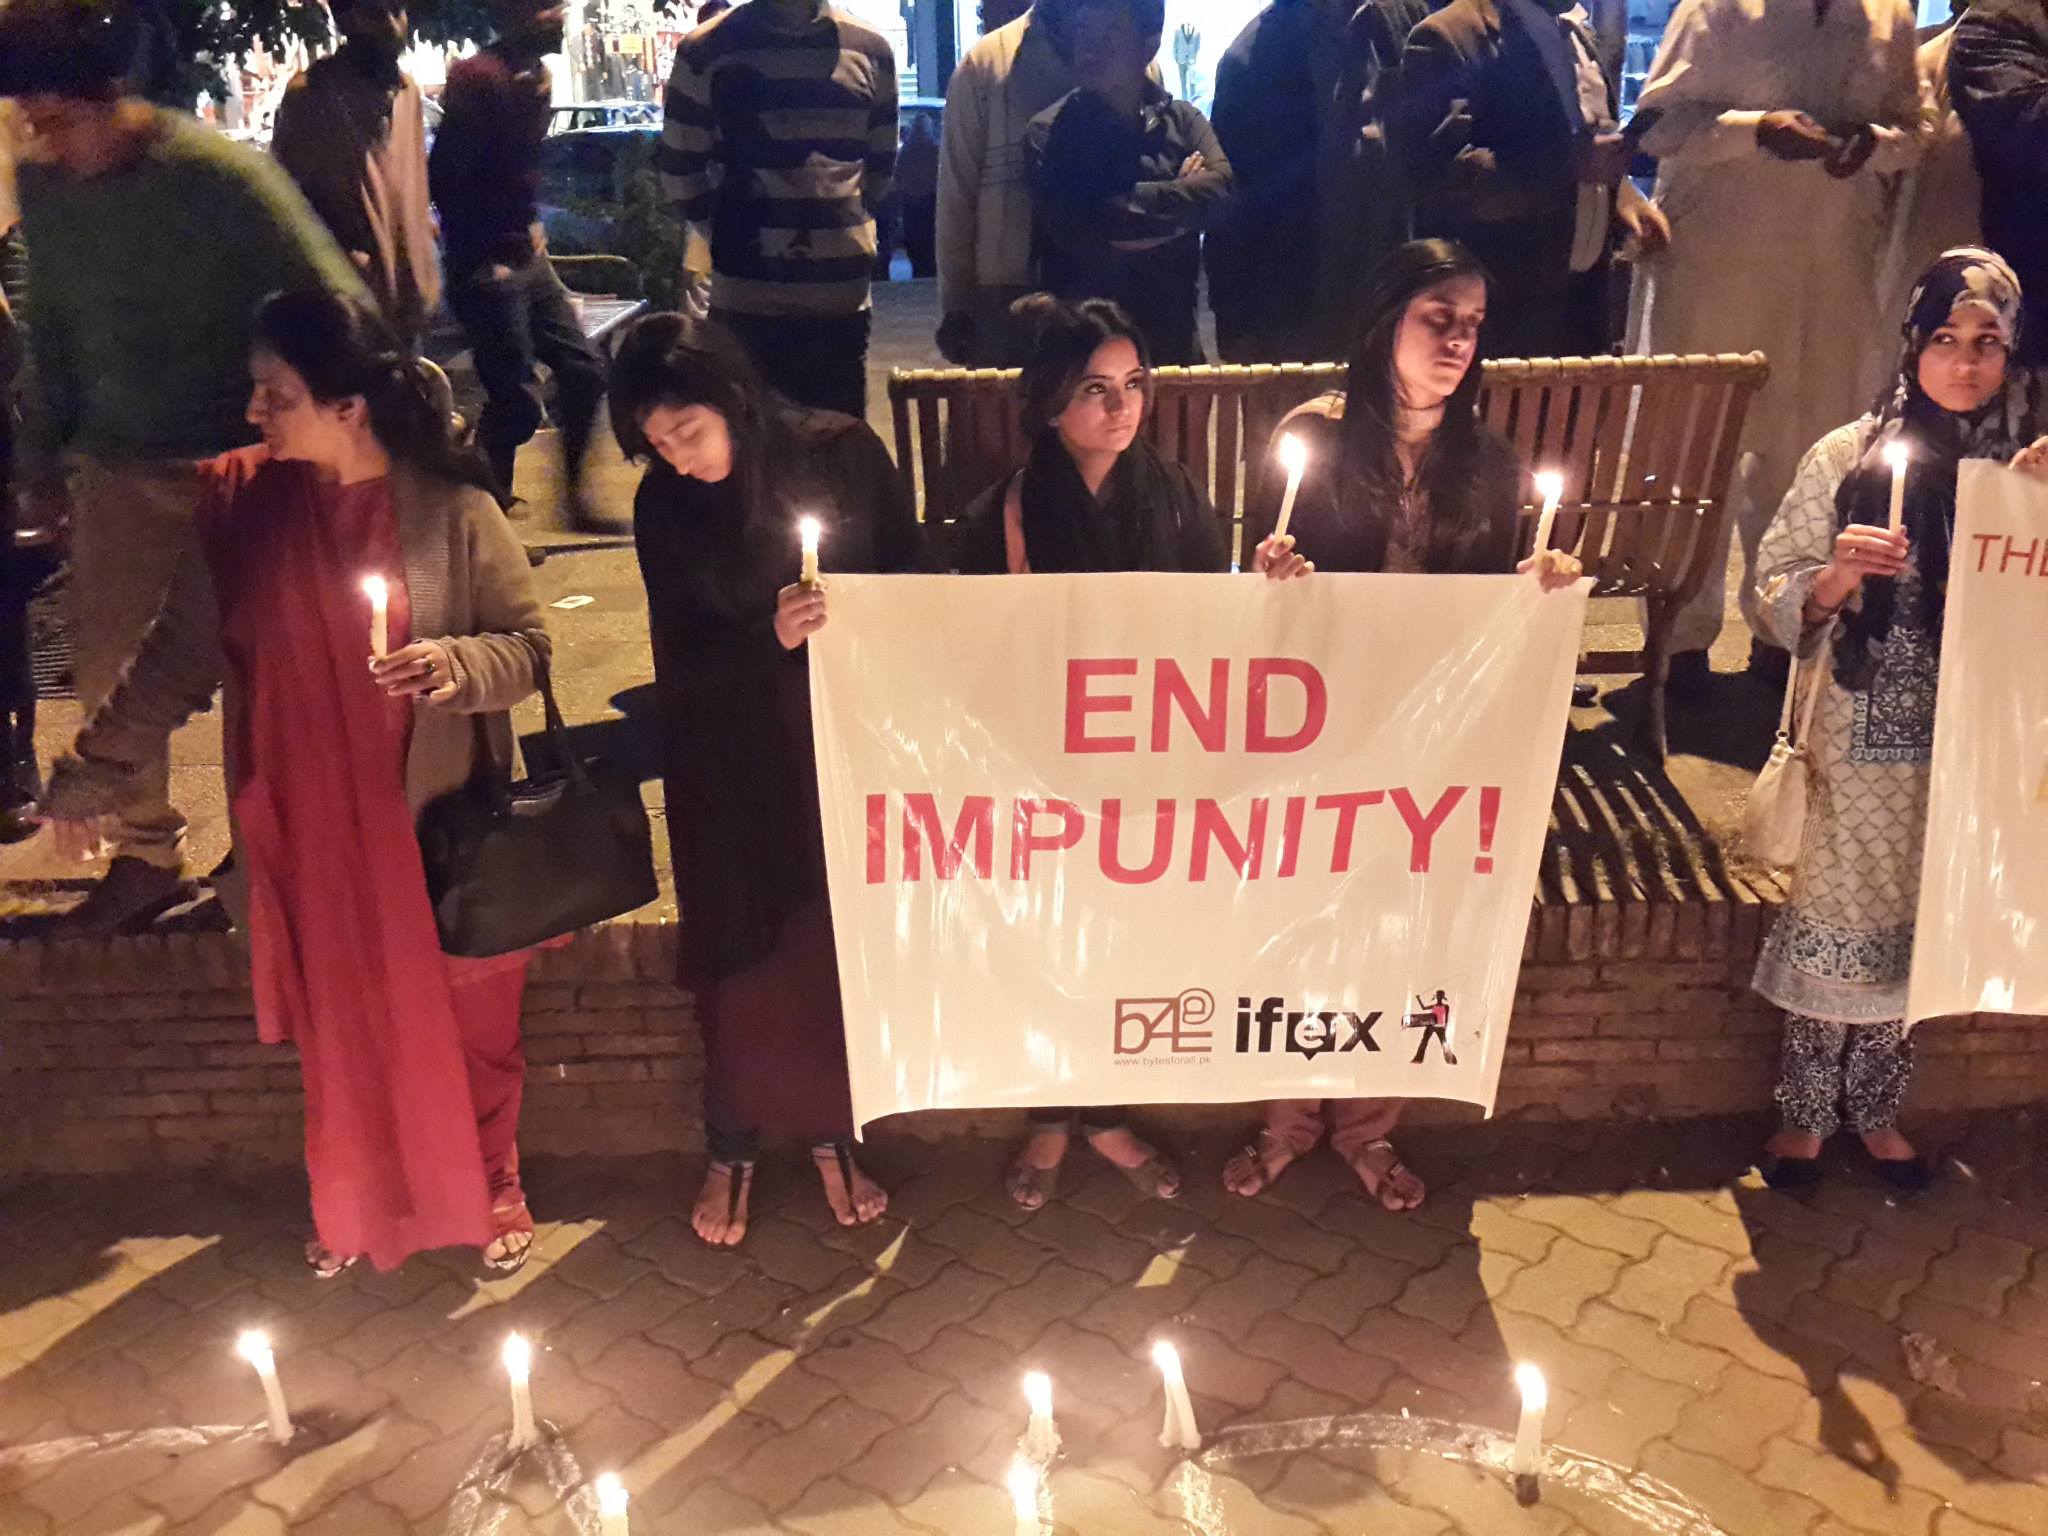 Veille à la chandelle du groupe Bytes for All, en signe de solidarité avec la campagne de l'IFEX pour mettre fin à l'impunité et la campagne TakeBackTheTech (Réapproprions-nous la technologie), 26 novembre 2014